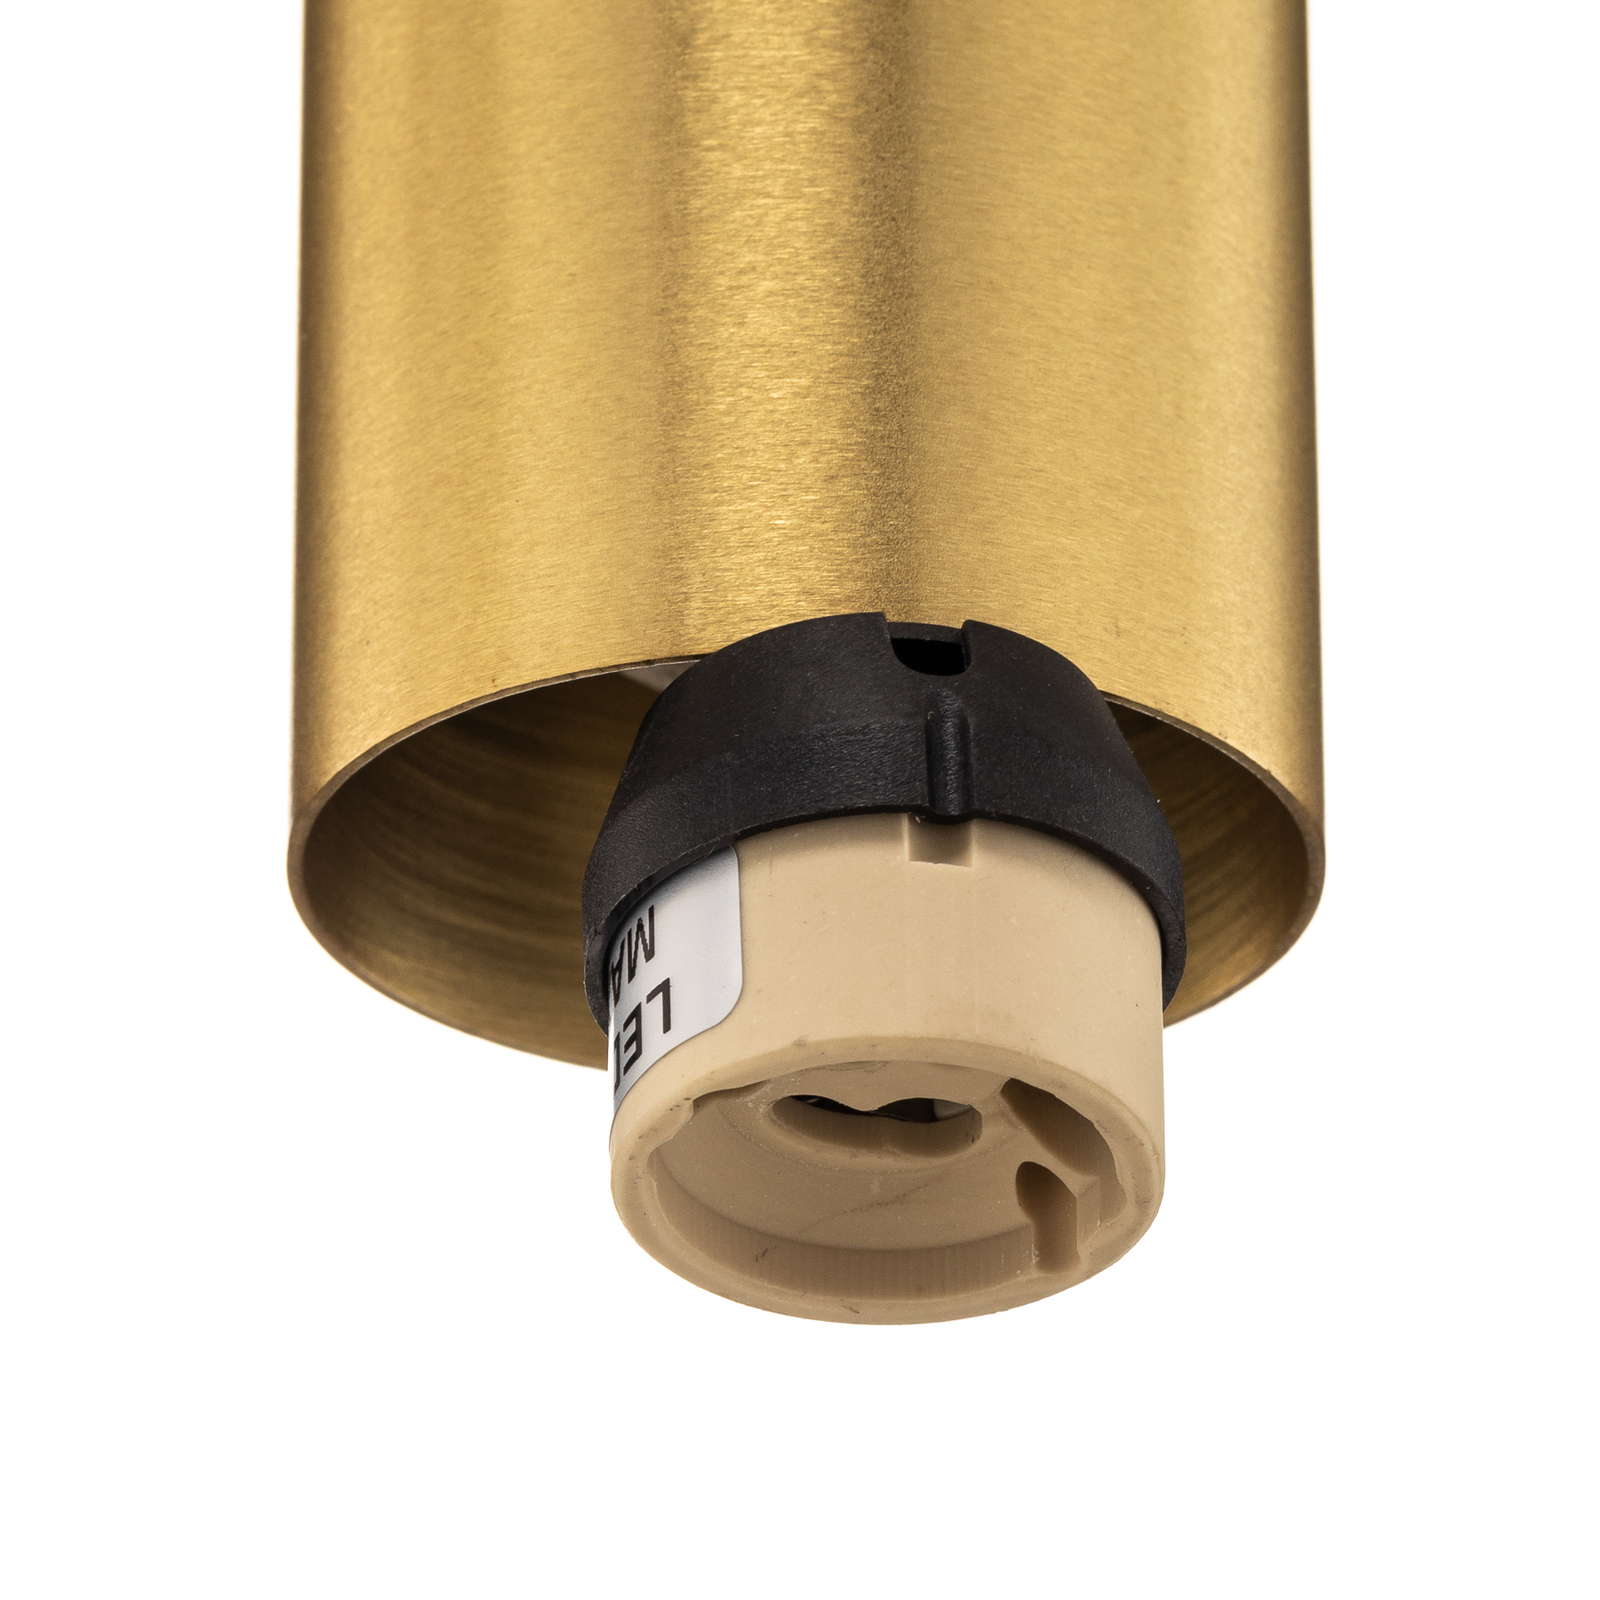 Suspension Cylinder, transparent/laiton, hauteur 15 cm